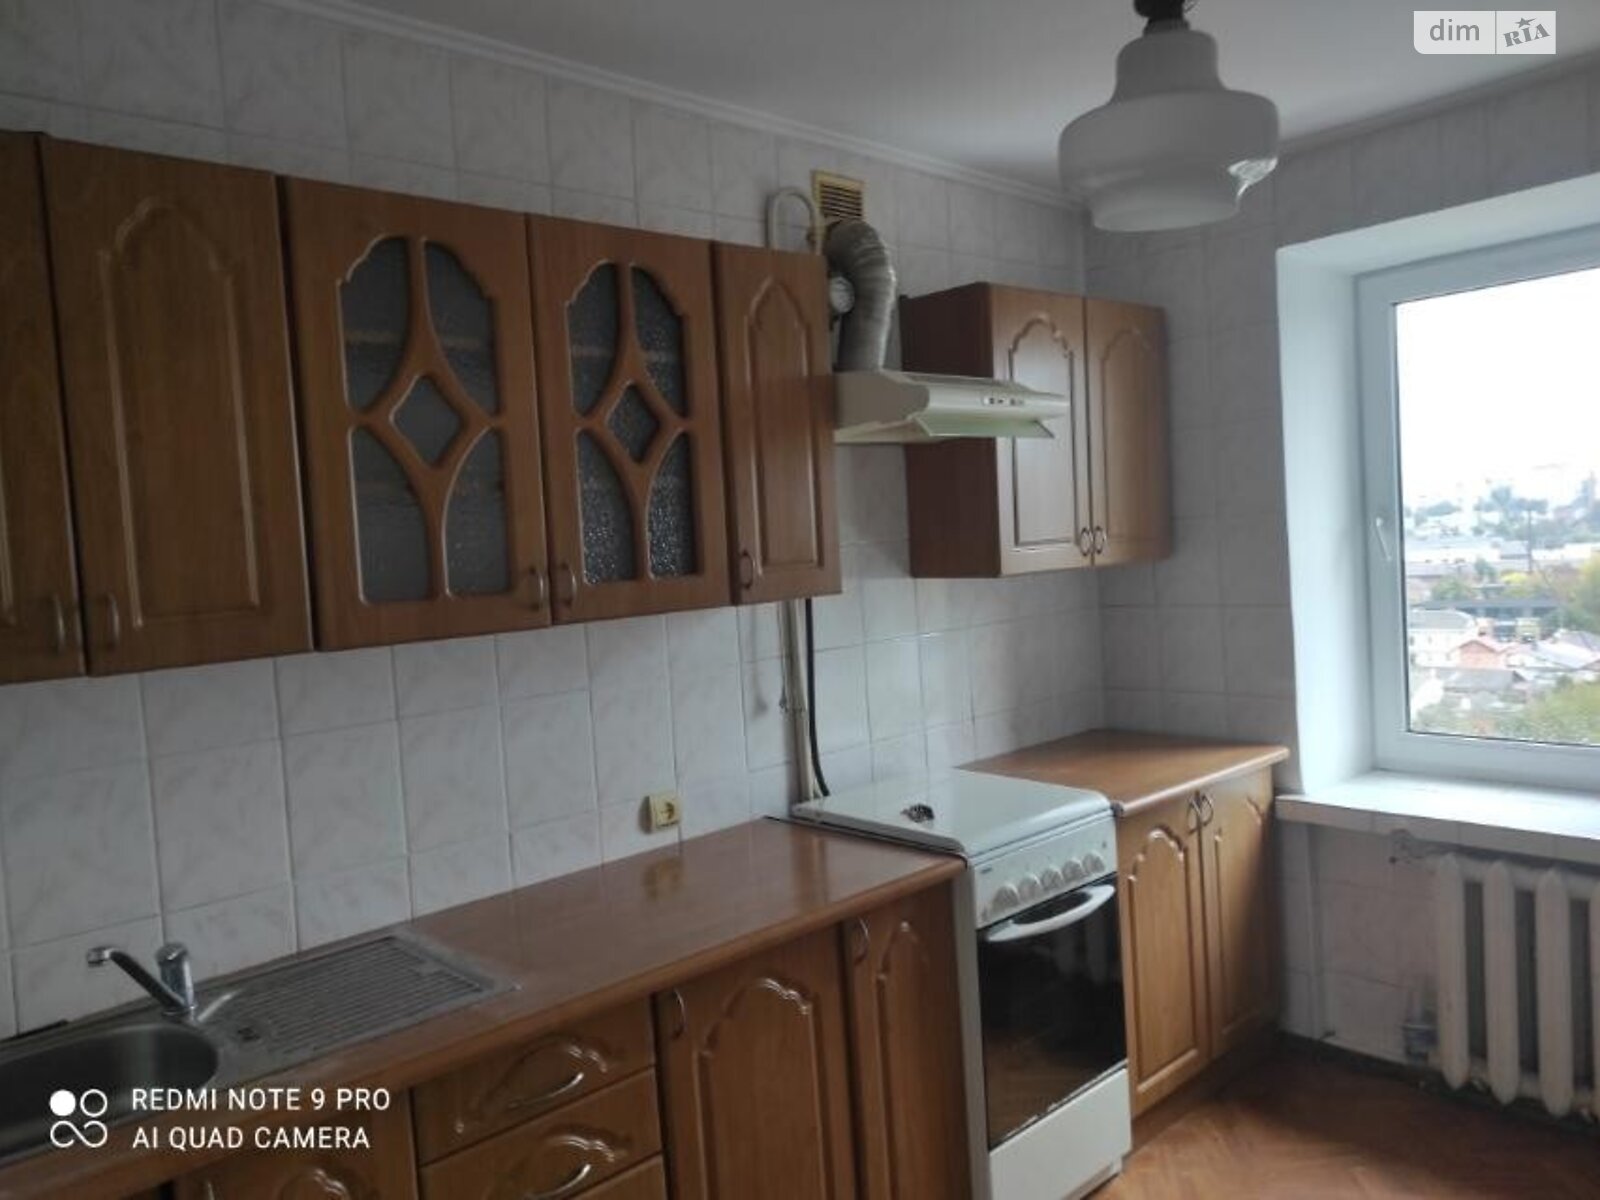 Продажа двухкомнатной квартиры в Хмельницком, на ул. Трембовецкой Марии, район Ж-д вокзал фото 1